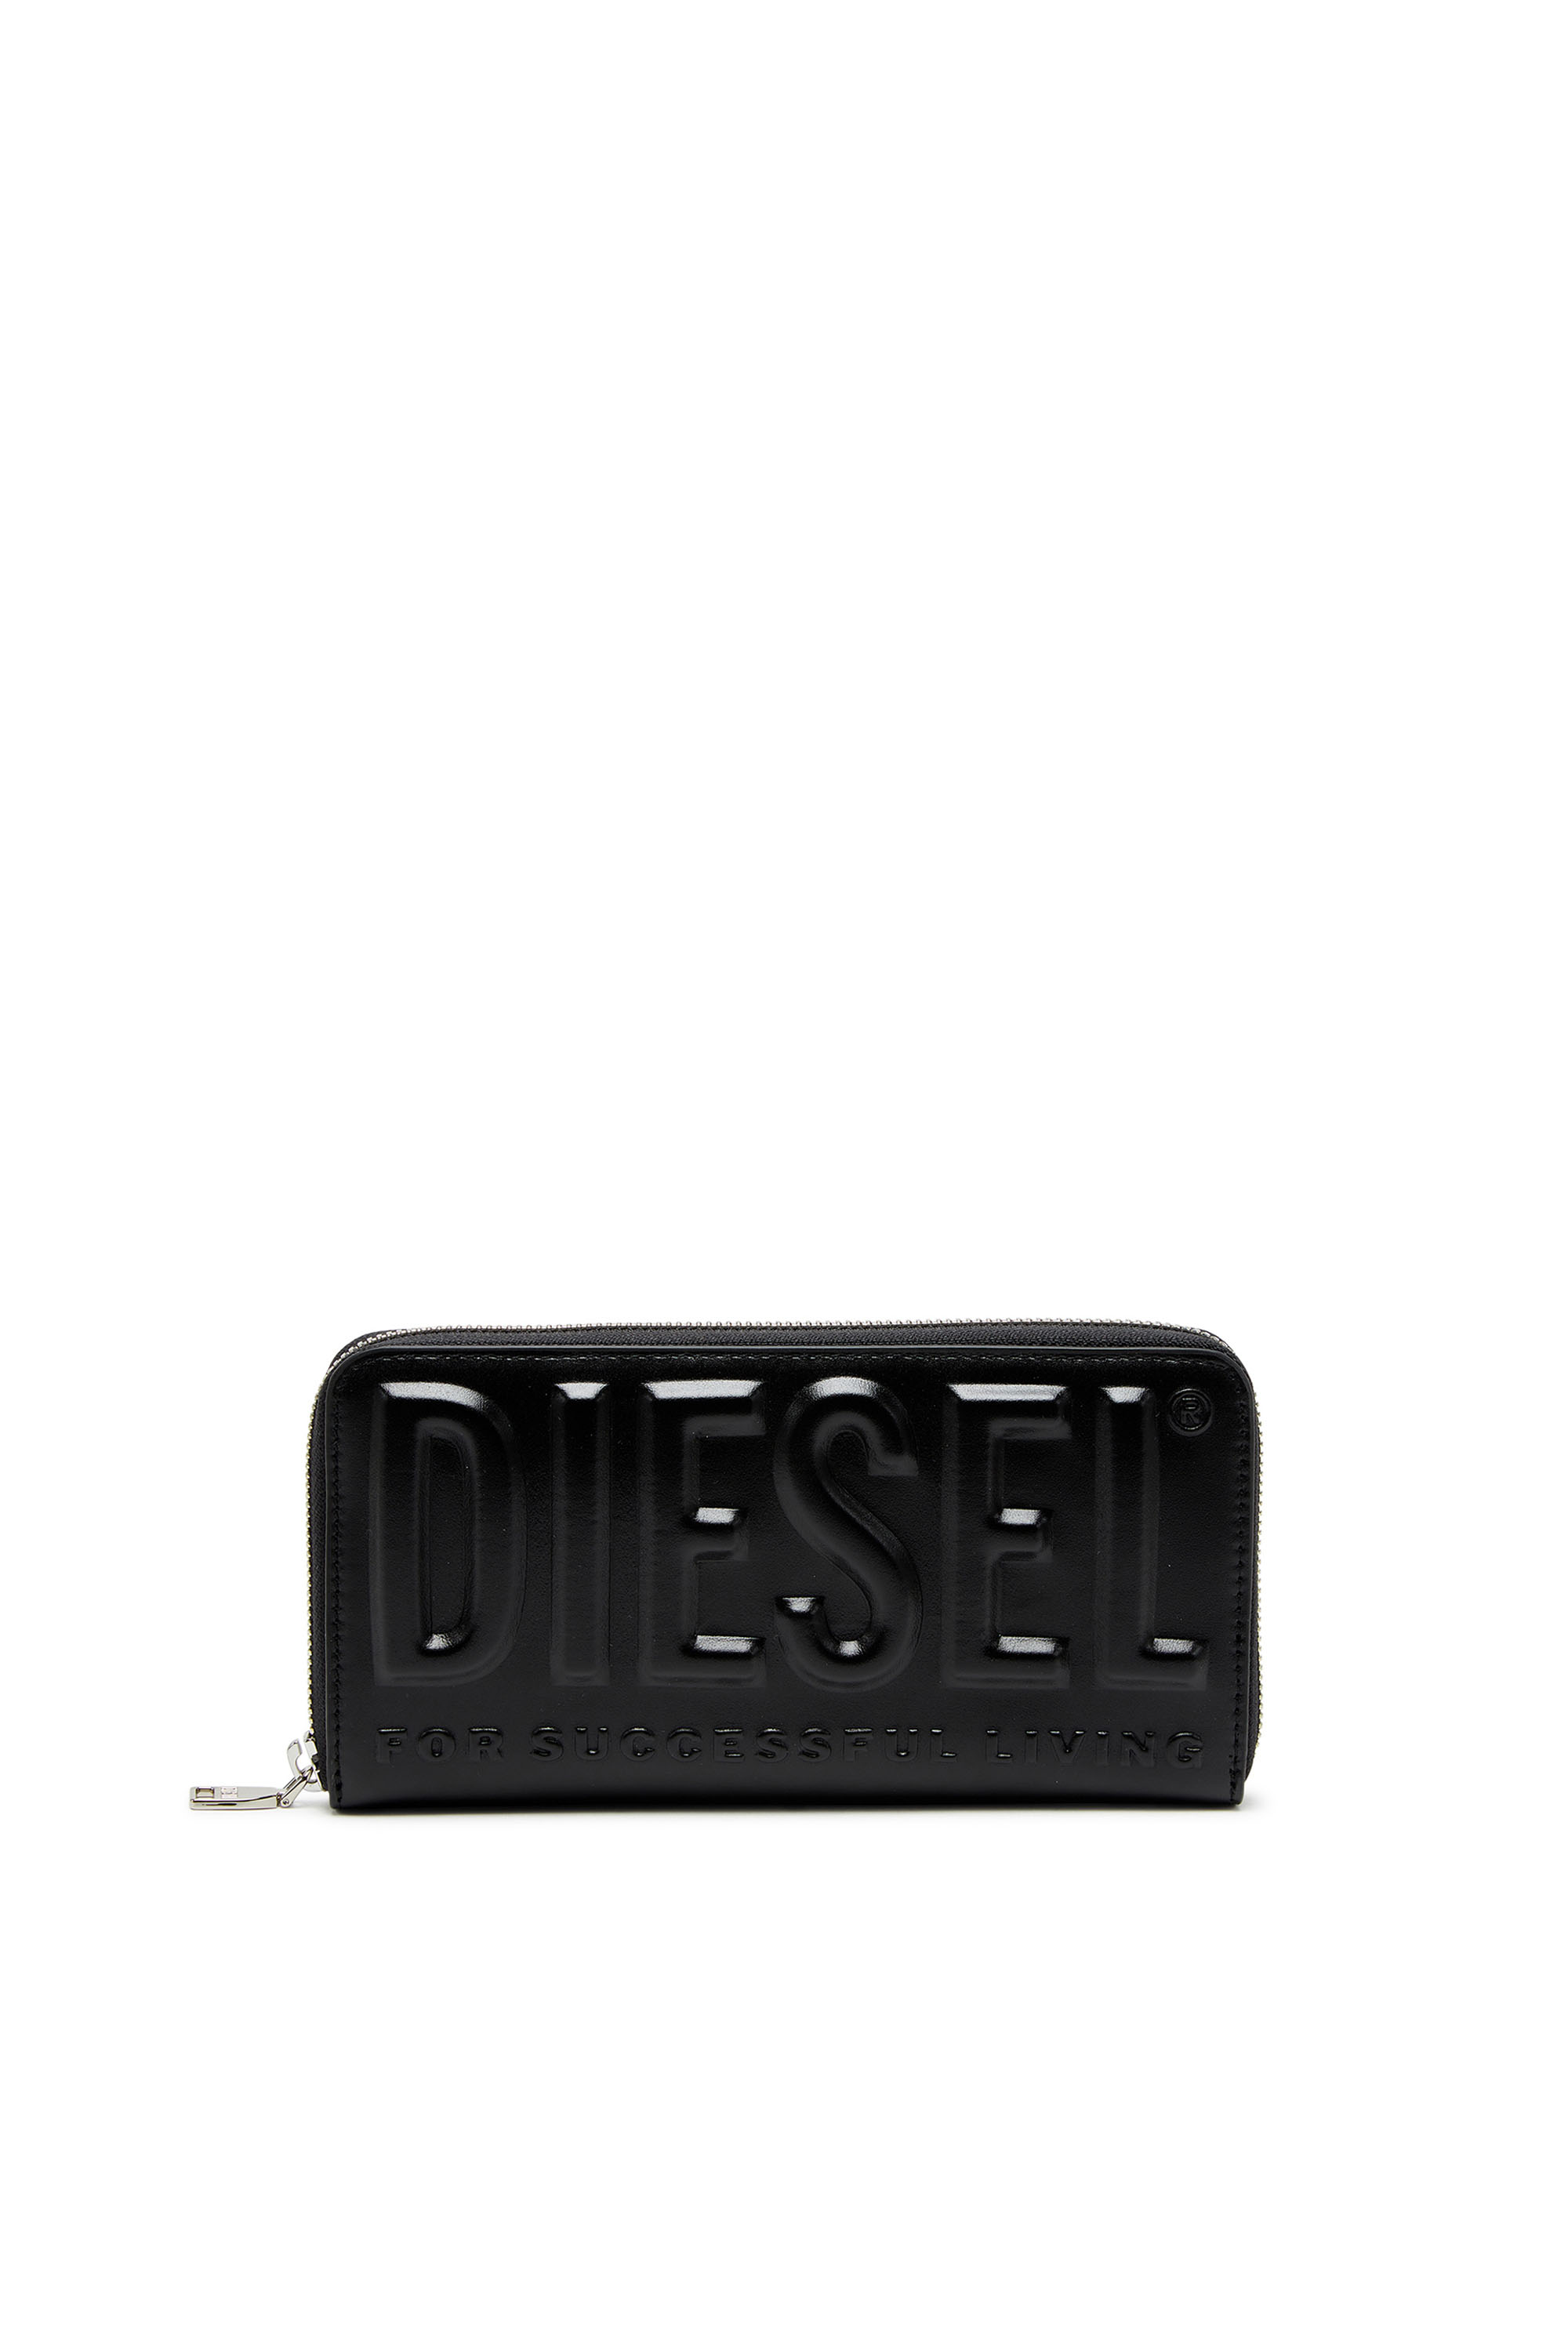 Diesel - DSL 3D -CONTINENTAL ZIP L, Man Long zip wallet in logo-embossed leather in Black - Image 1